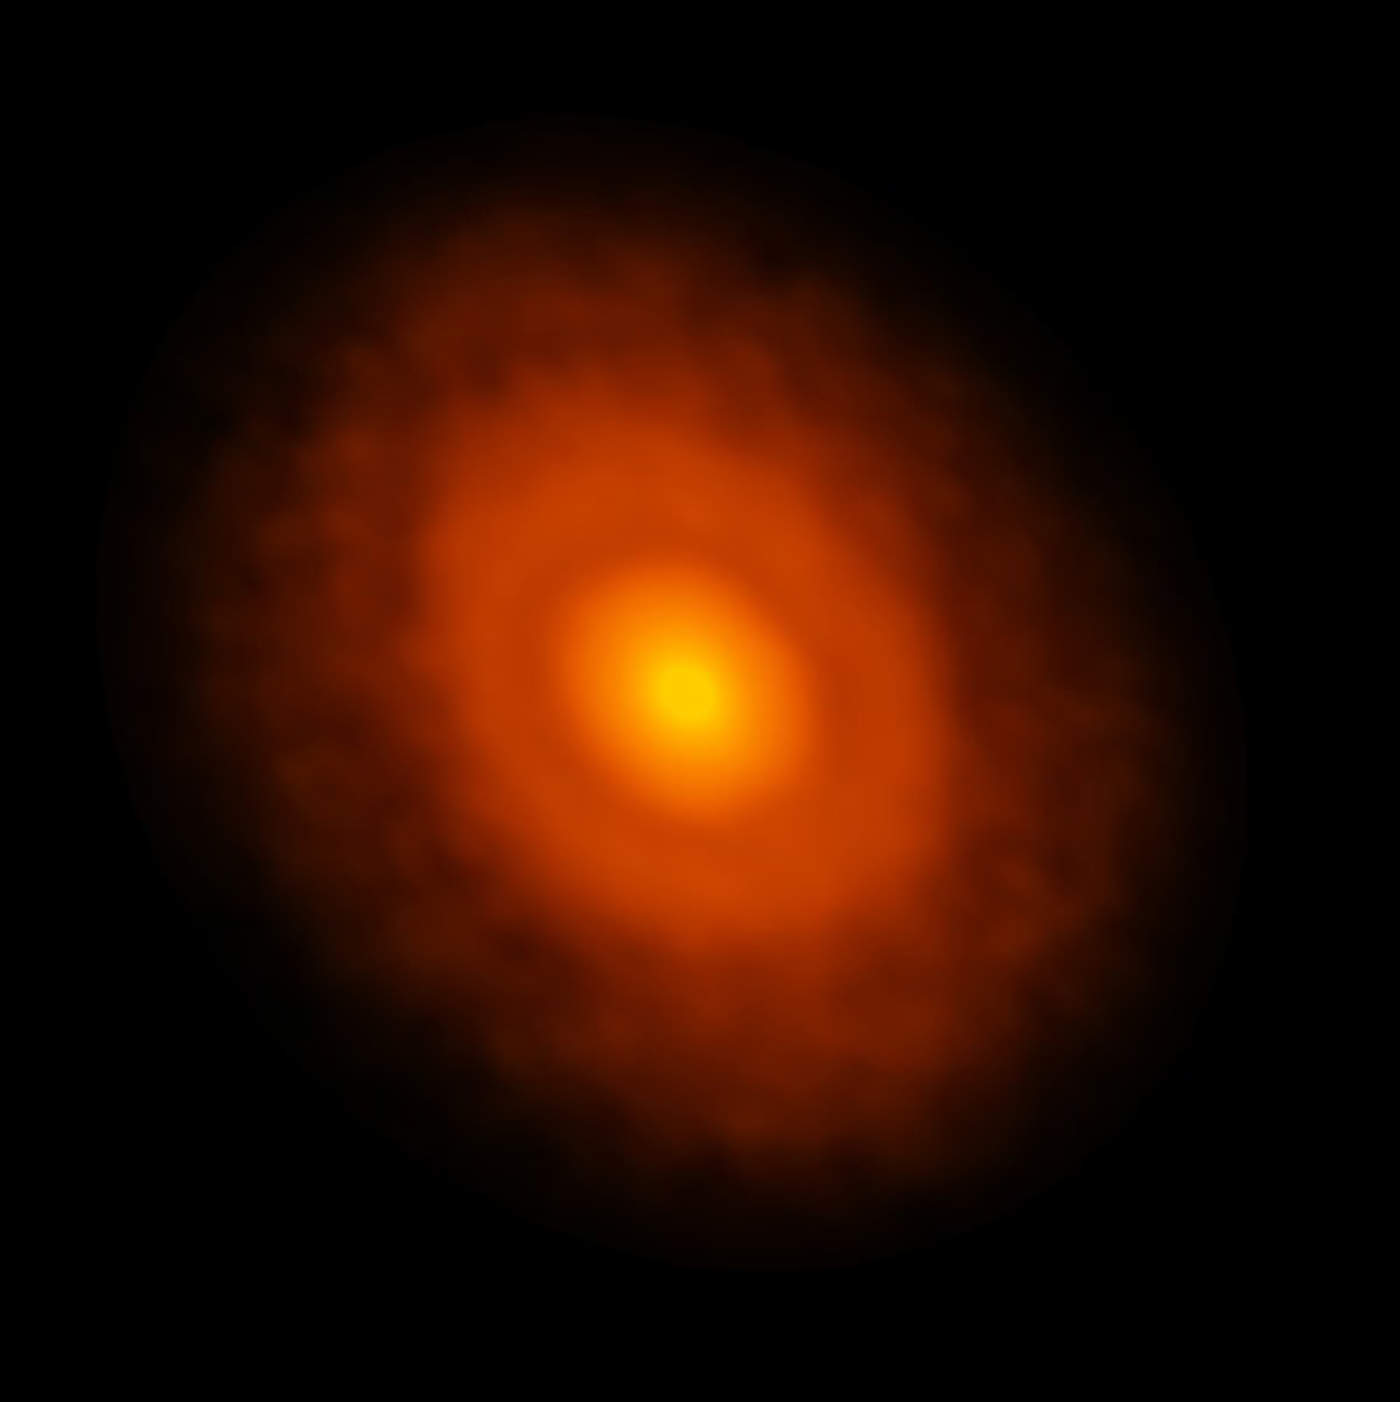 Los científicos descubrieron que tras una erupción repentina, la estrella empezó a liberar partículas presentes en el material helado del disco protoplanetario. (ESPECIAL)